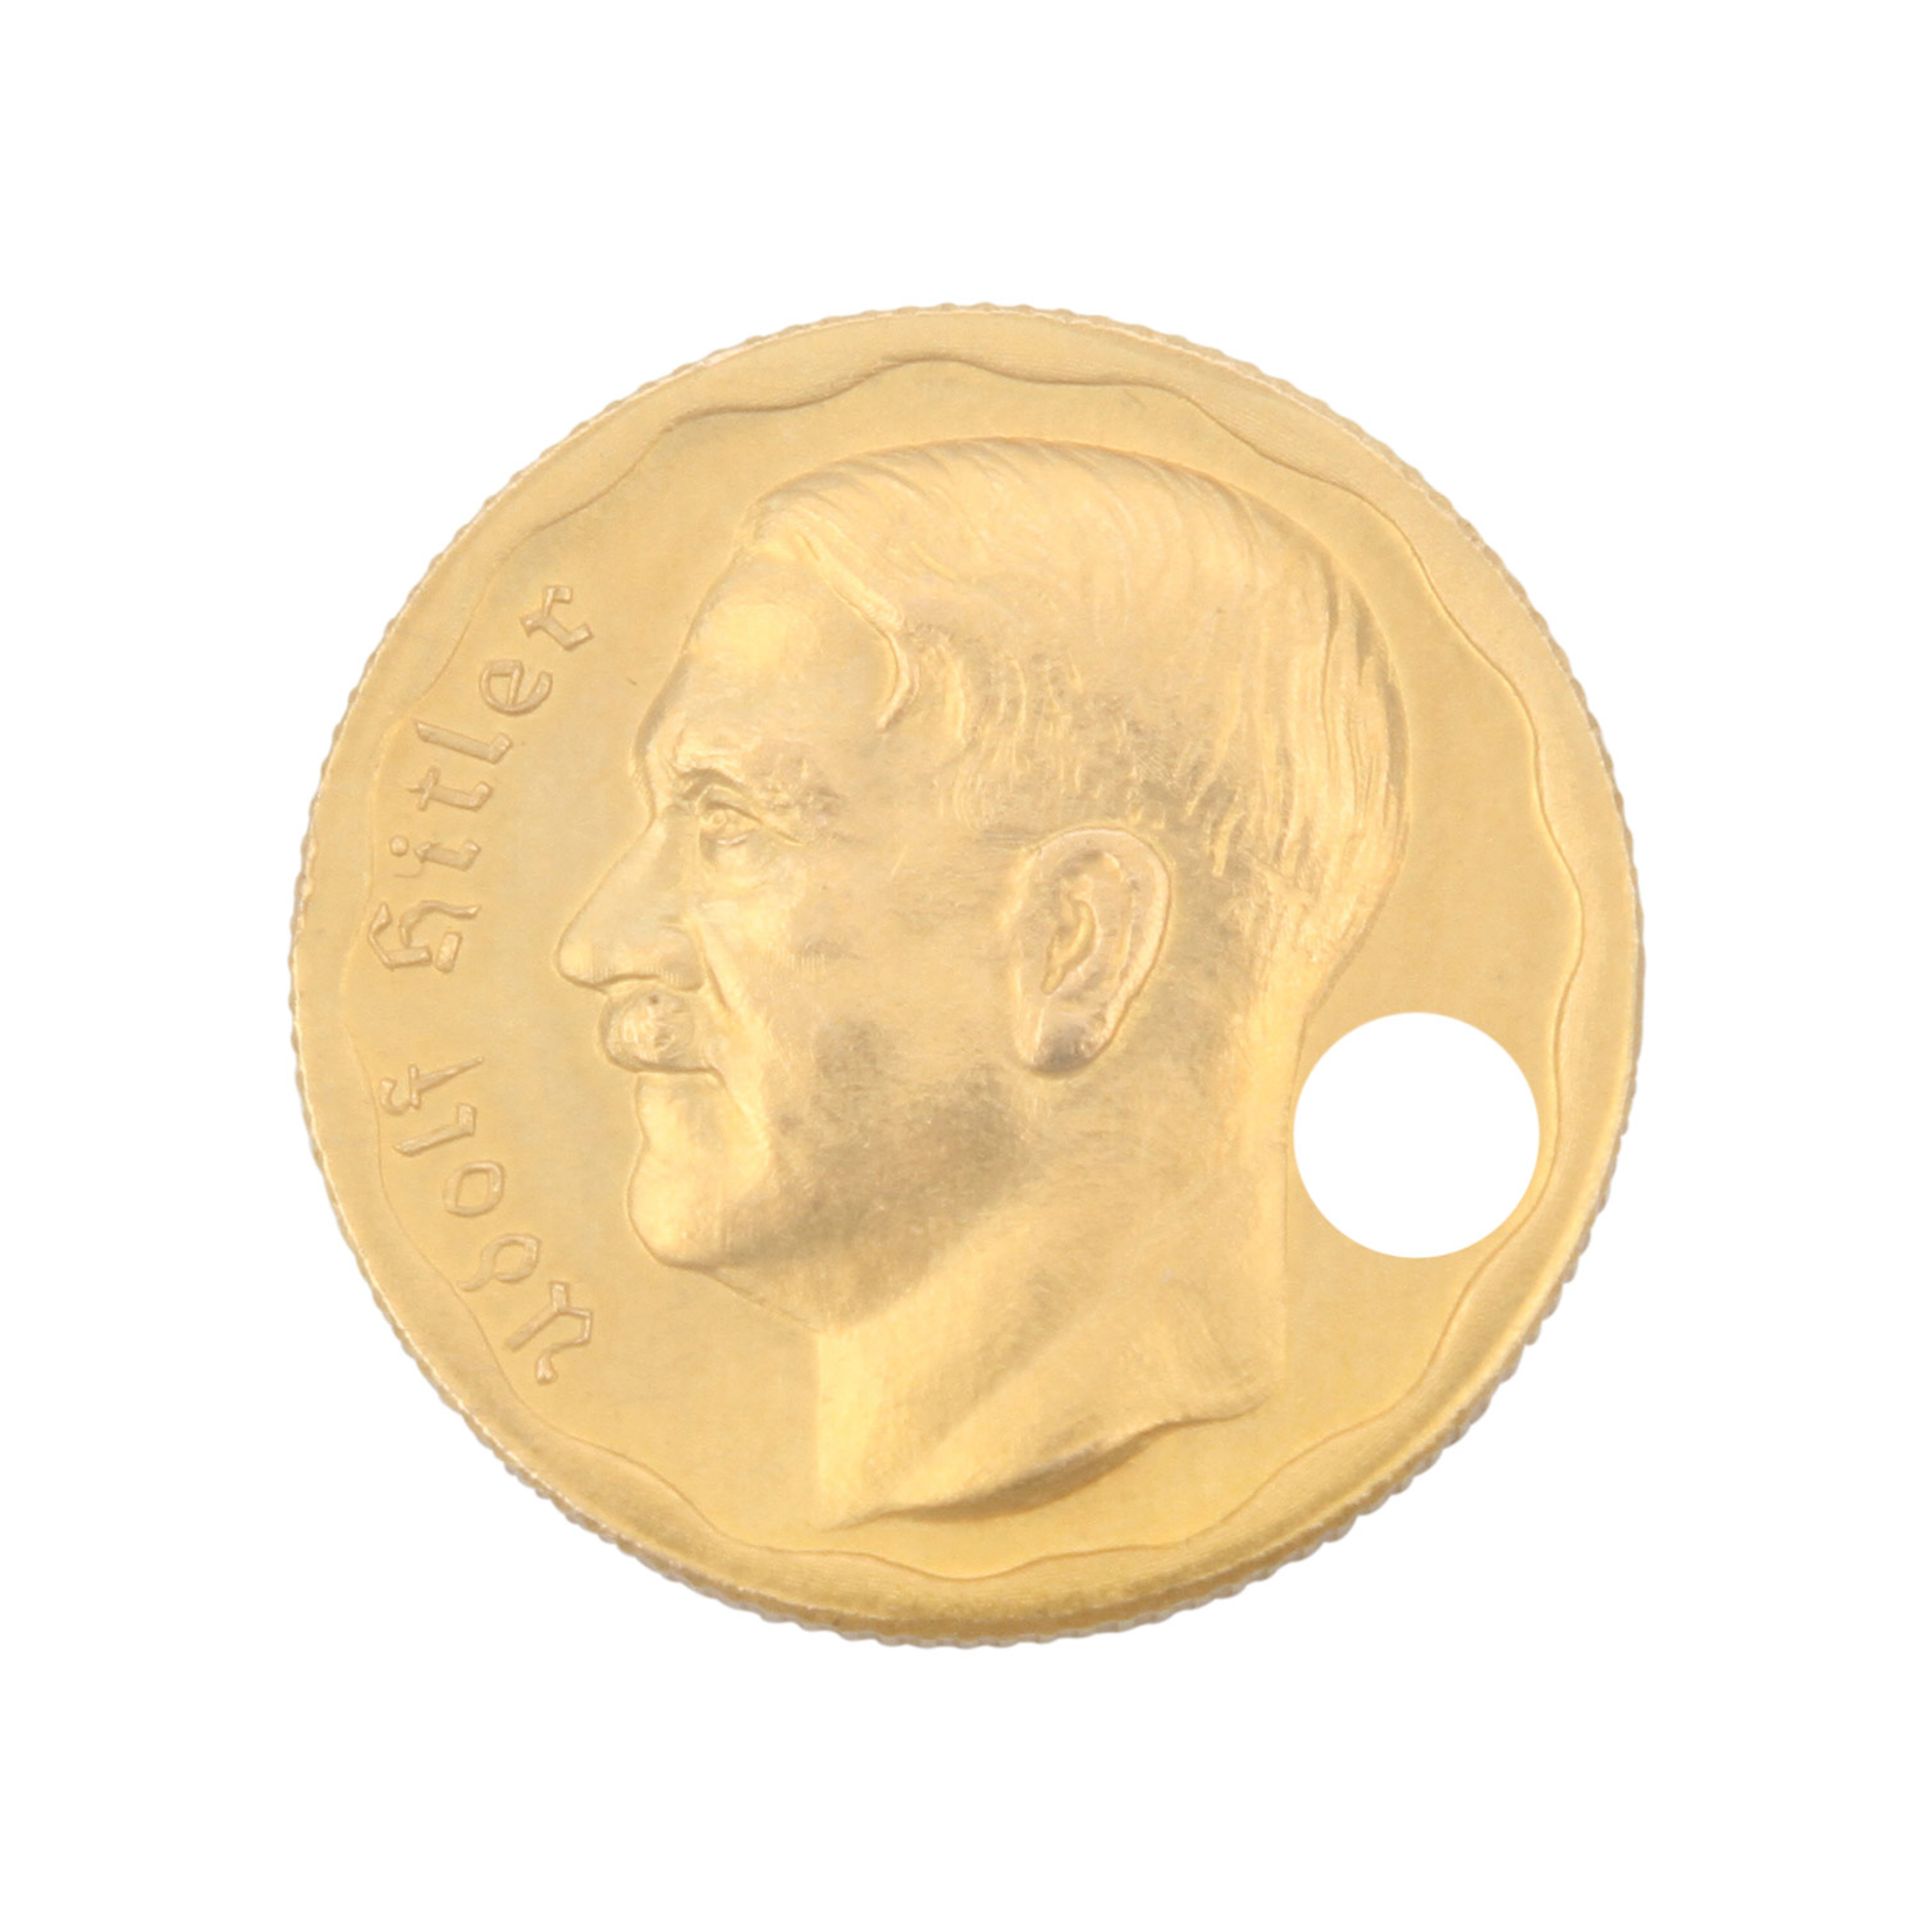 Deutsches Reich 1933-1945 - Fantasieprägung zu 20 Reichsmark, Goldmedaille (1933) unsigniert.